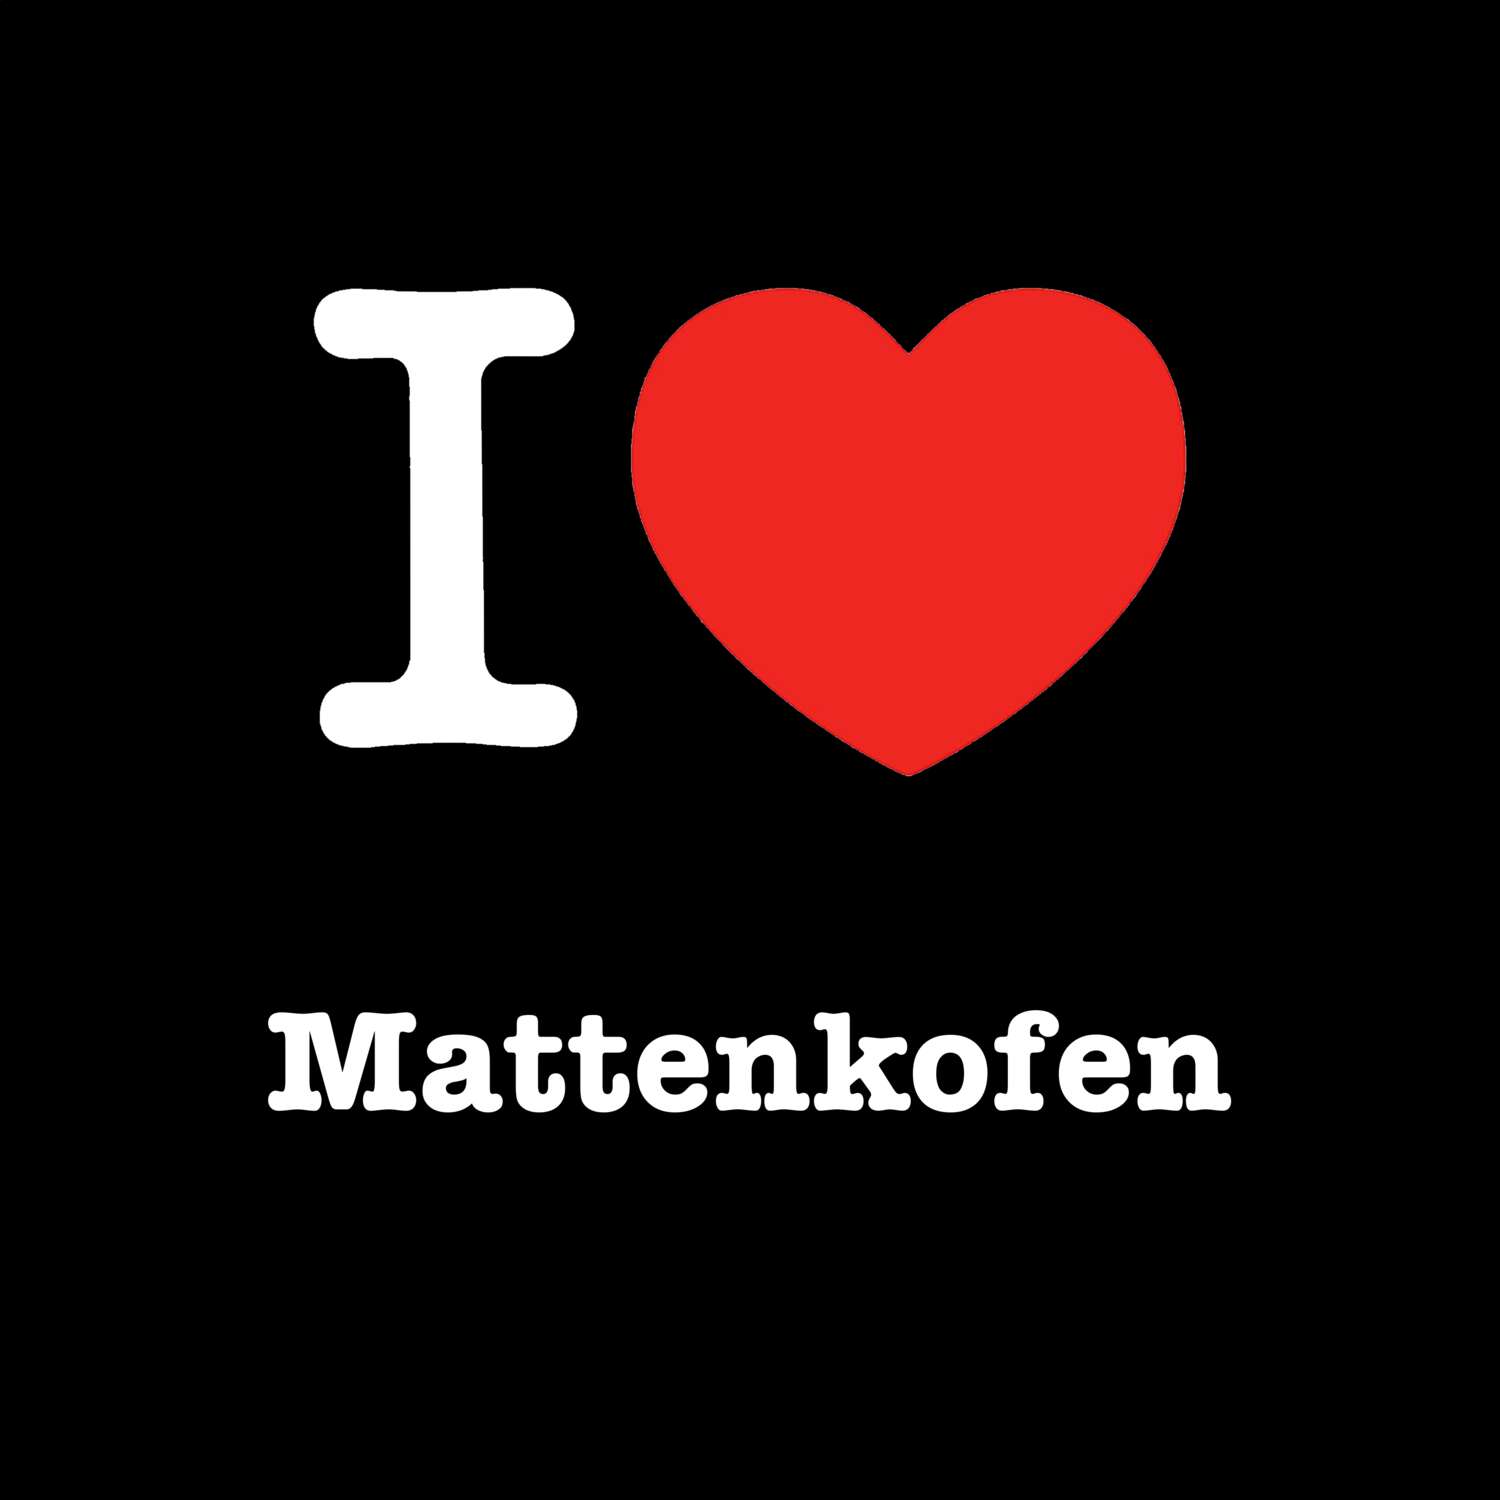 Mattenkofen T-Shirt »I love«